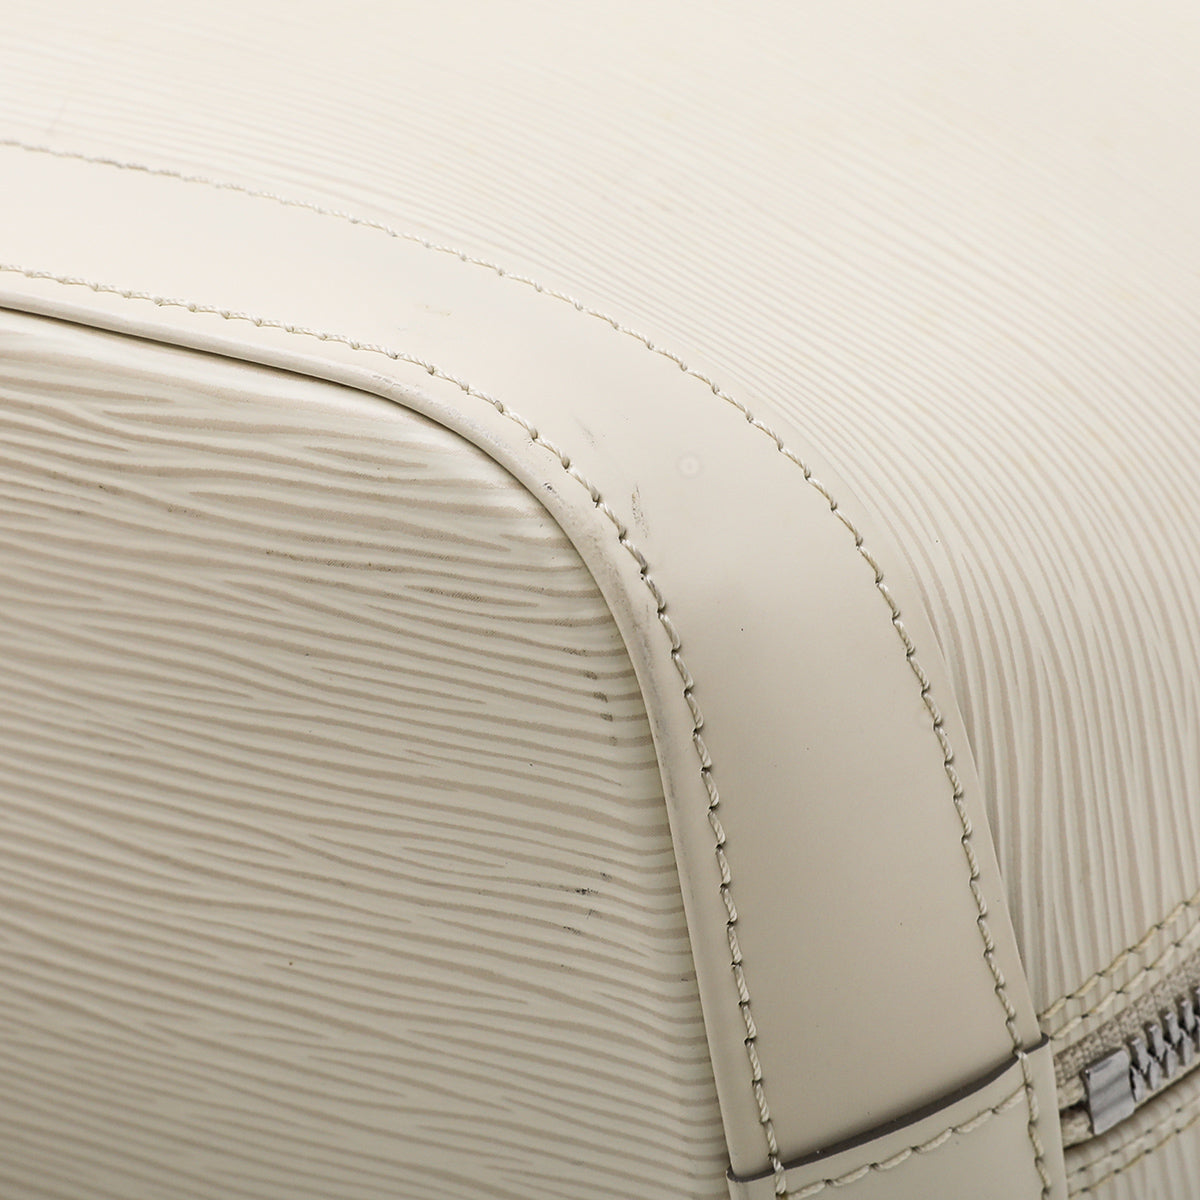 Louis Vuitton Ivory Alma PM Bag